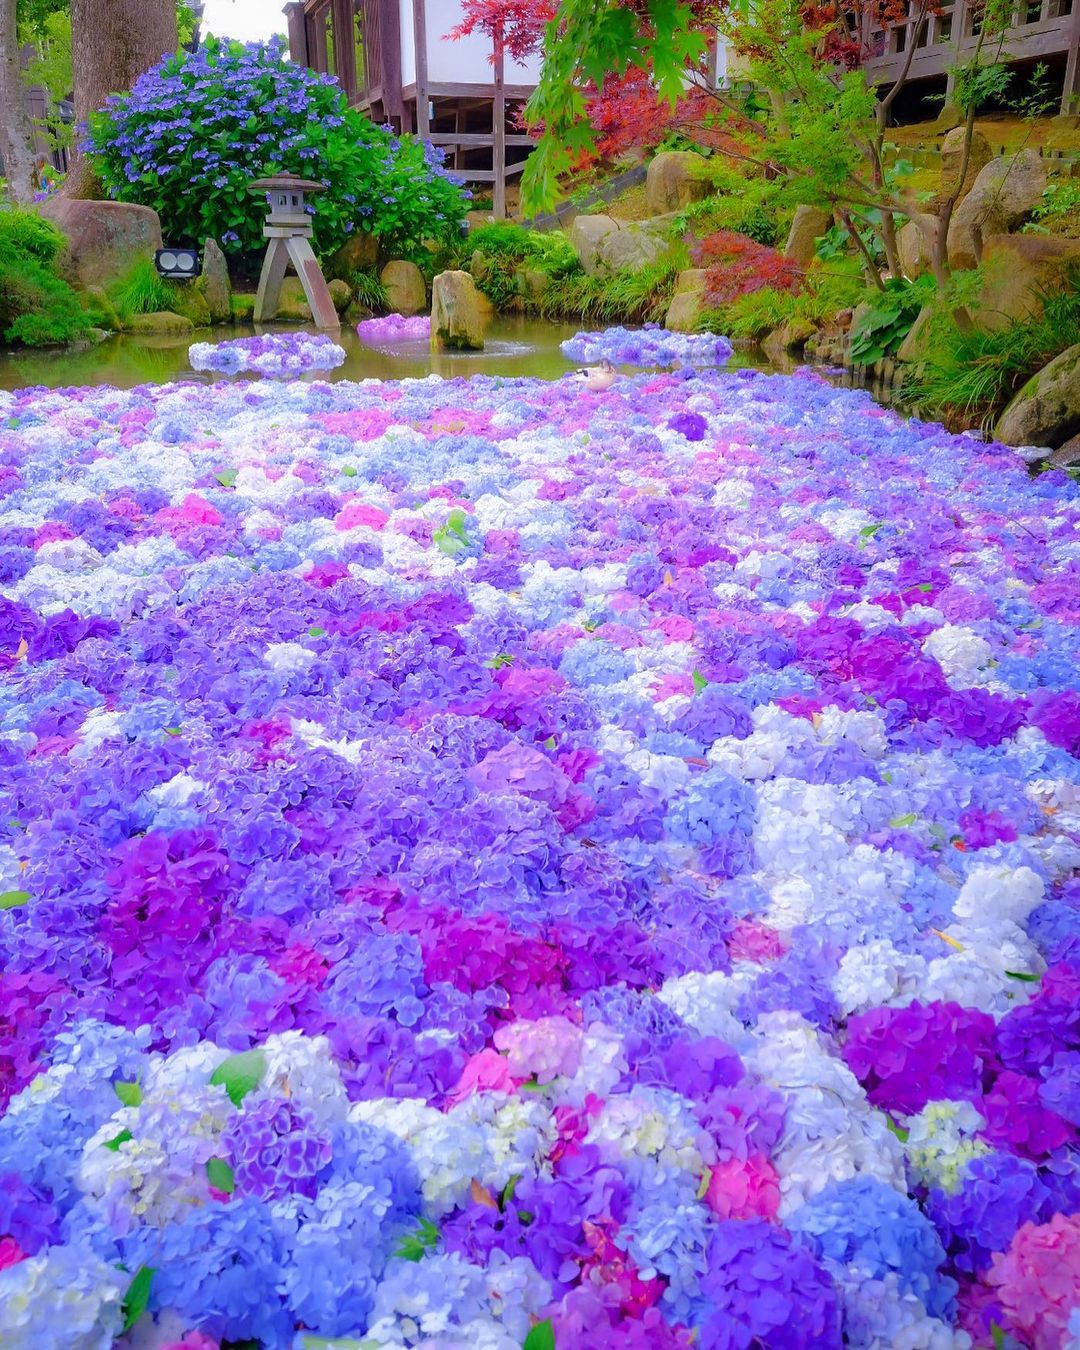 水も滴る美しい梅雨の花 6月に行きたい関東の 紫陽花スポット 14選 Retrip リトリップ